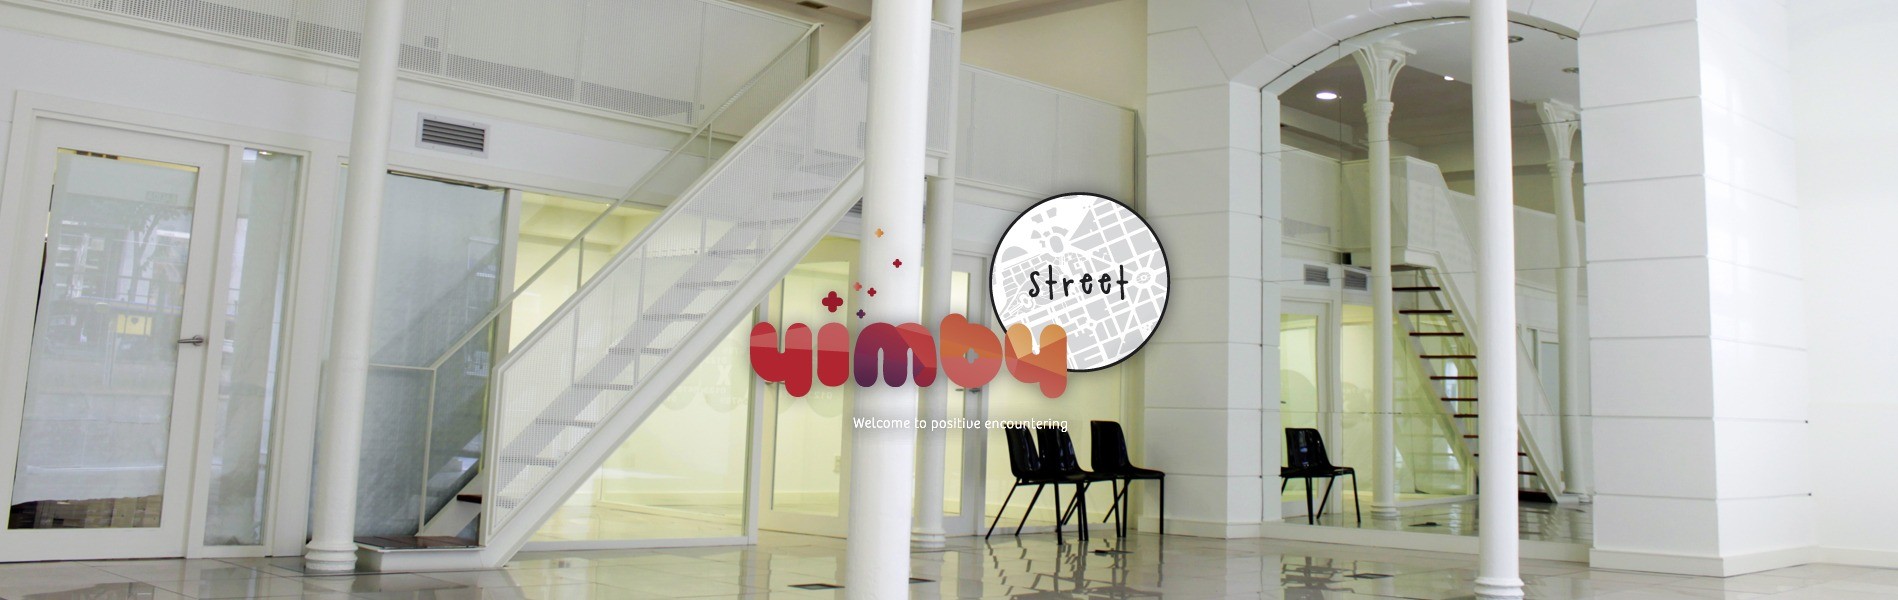 Espacio YIMBY STREET II con logo YIMBY